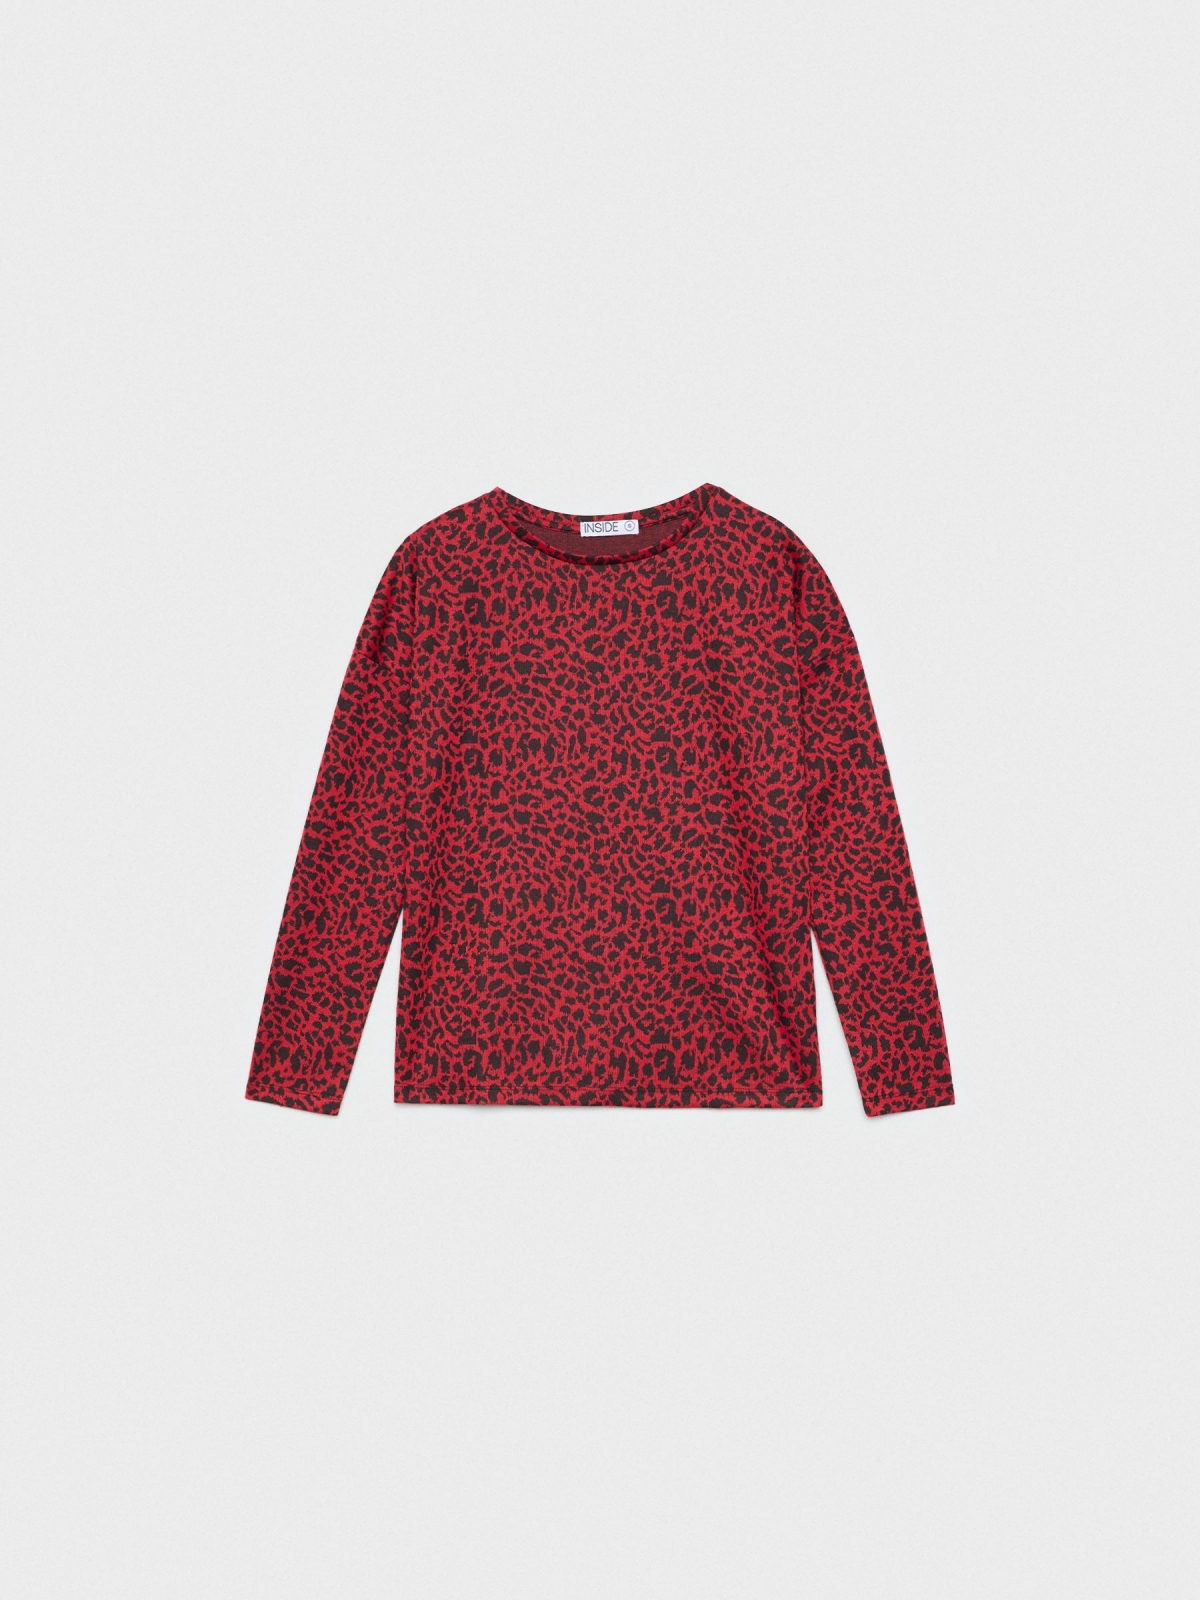  T-shirt com estampado animal print leopardo vermelho